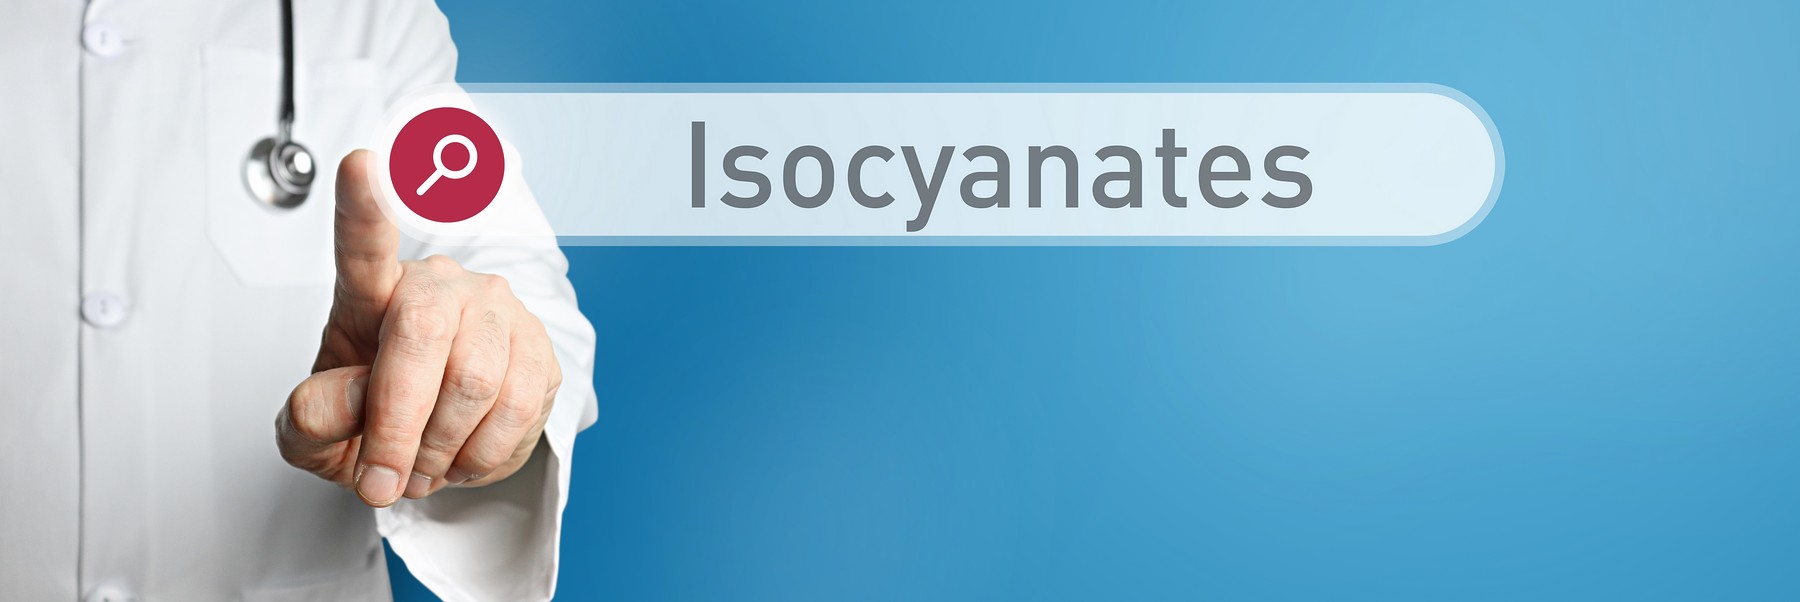 Isocyanates